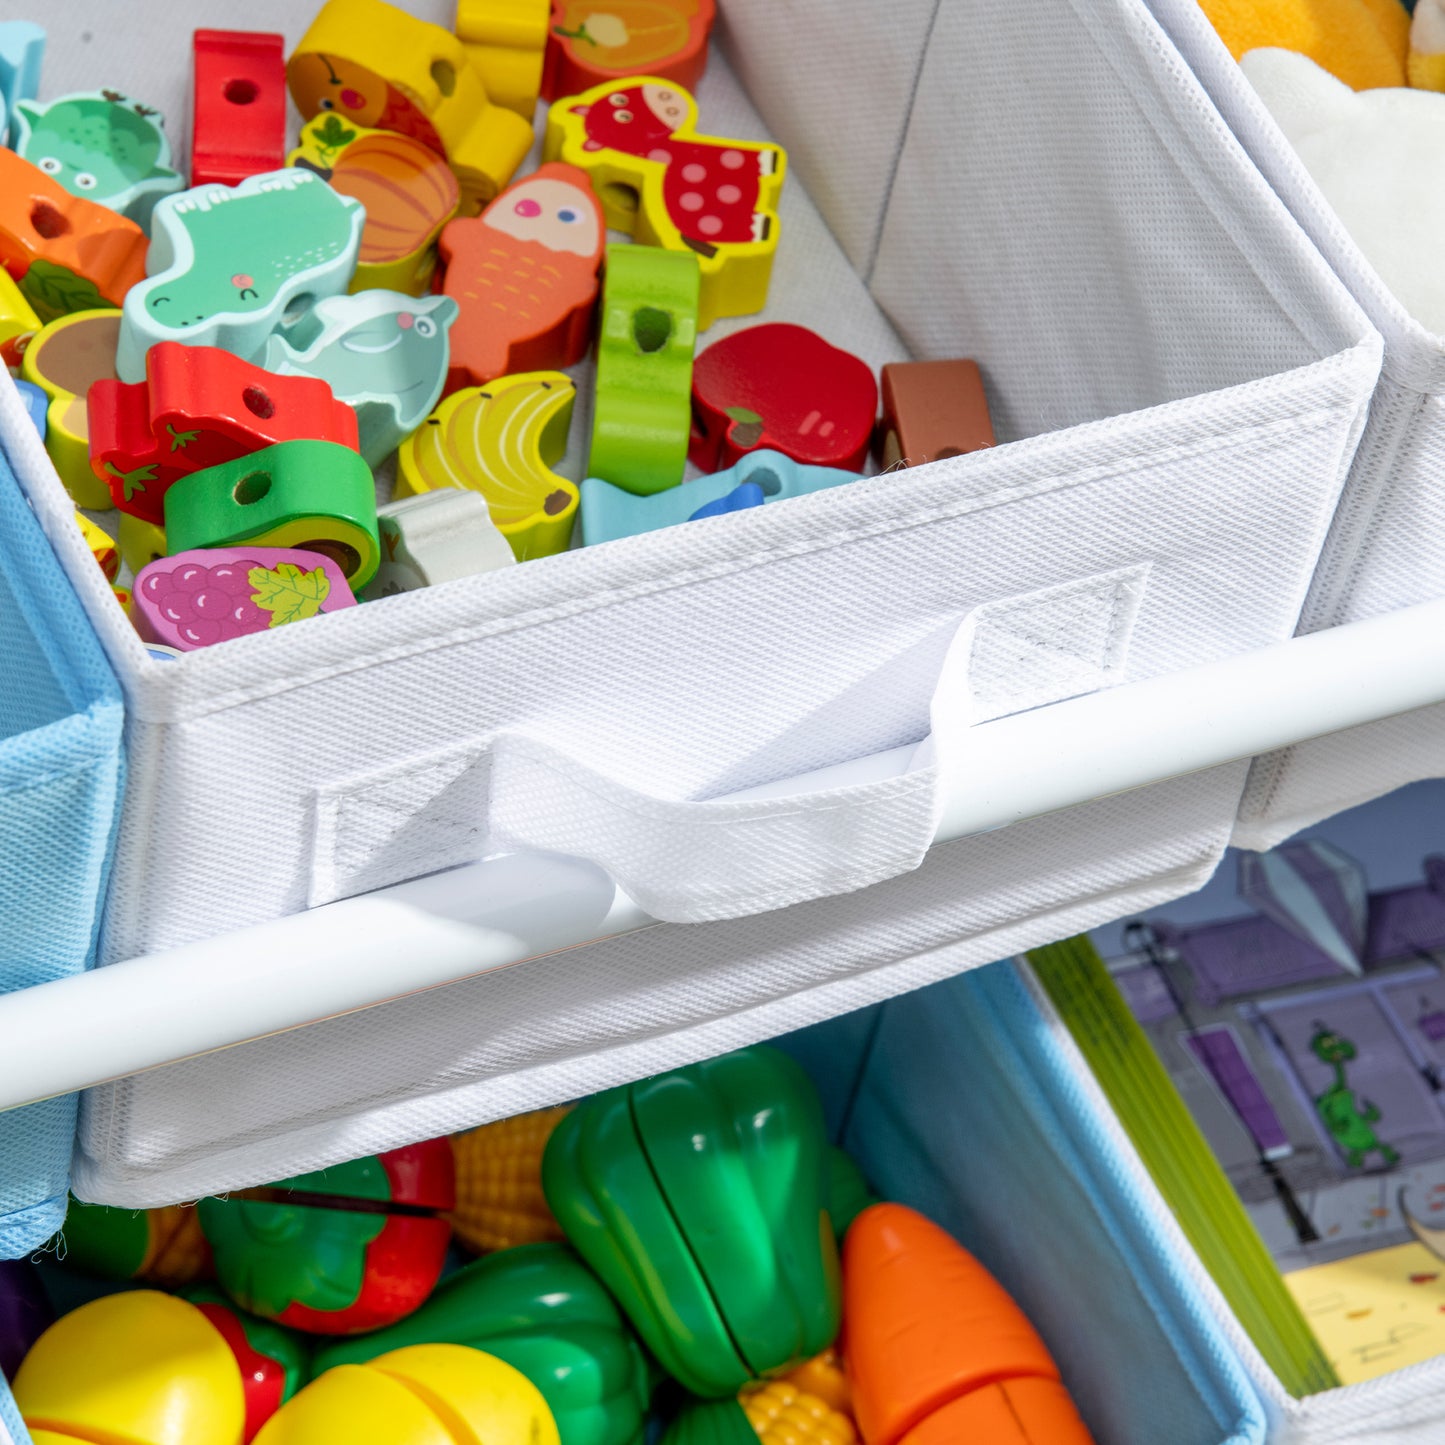 ZONEKIZ Kids Storage Unit with 9 Removable Storage Baskets, Toy Box Organiser with Shelf, Book Shelf for Nursery Playroom, Blue